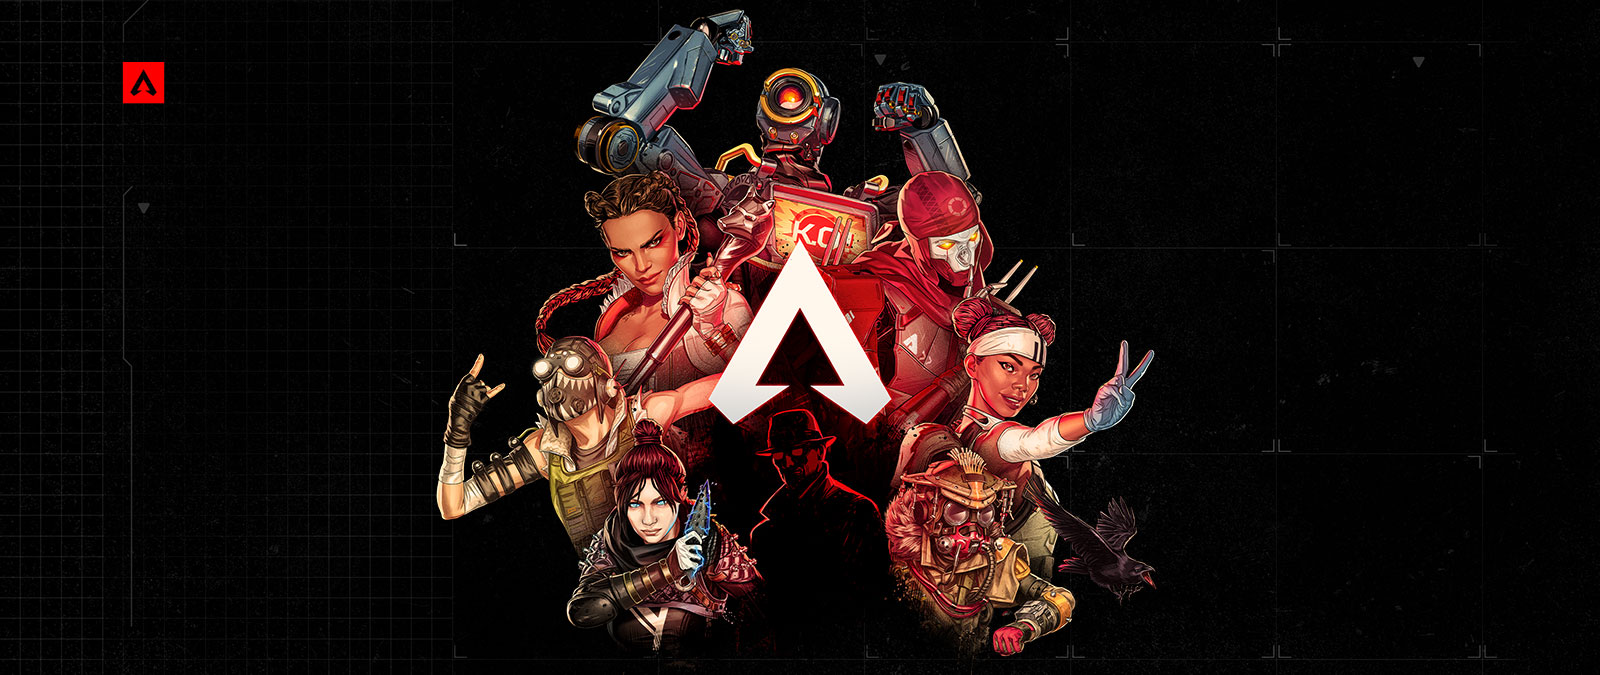 Μια συλλογή από χαρακτήρες του Apex Legends ποζάρουν με αυτοπεποίθηση γύρω από το λογότυπο του παιχνιδιού.